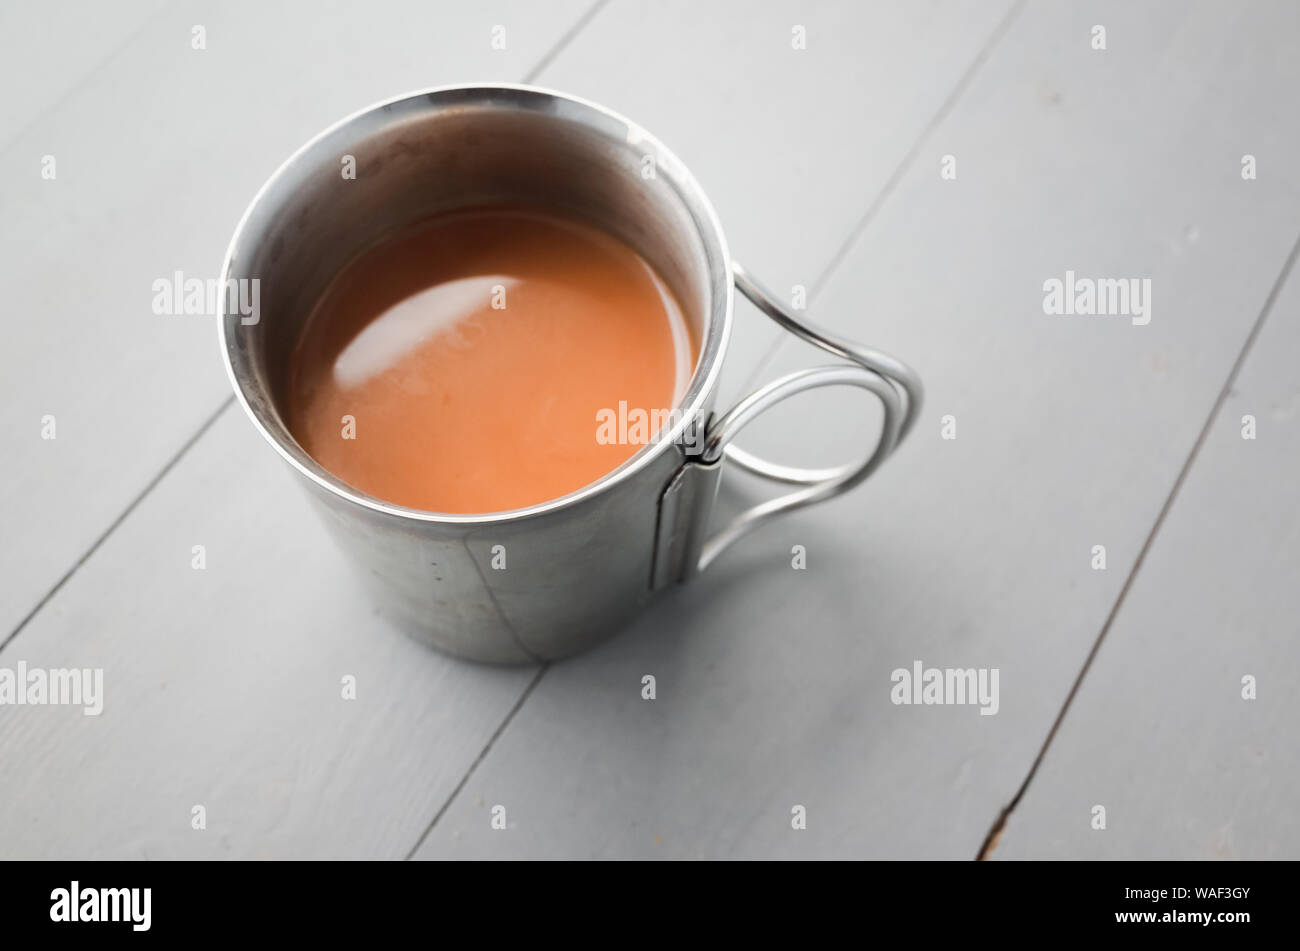 Edelstahl Becher Kaffee mit Milch steht auf einem weißen Holztisch, closeup Foto mit selektiven Fokus Stockfoto